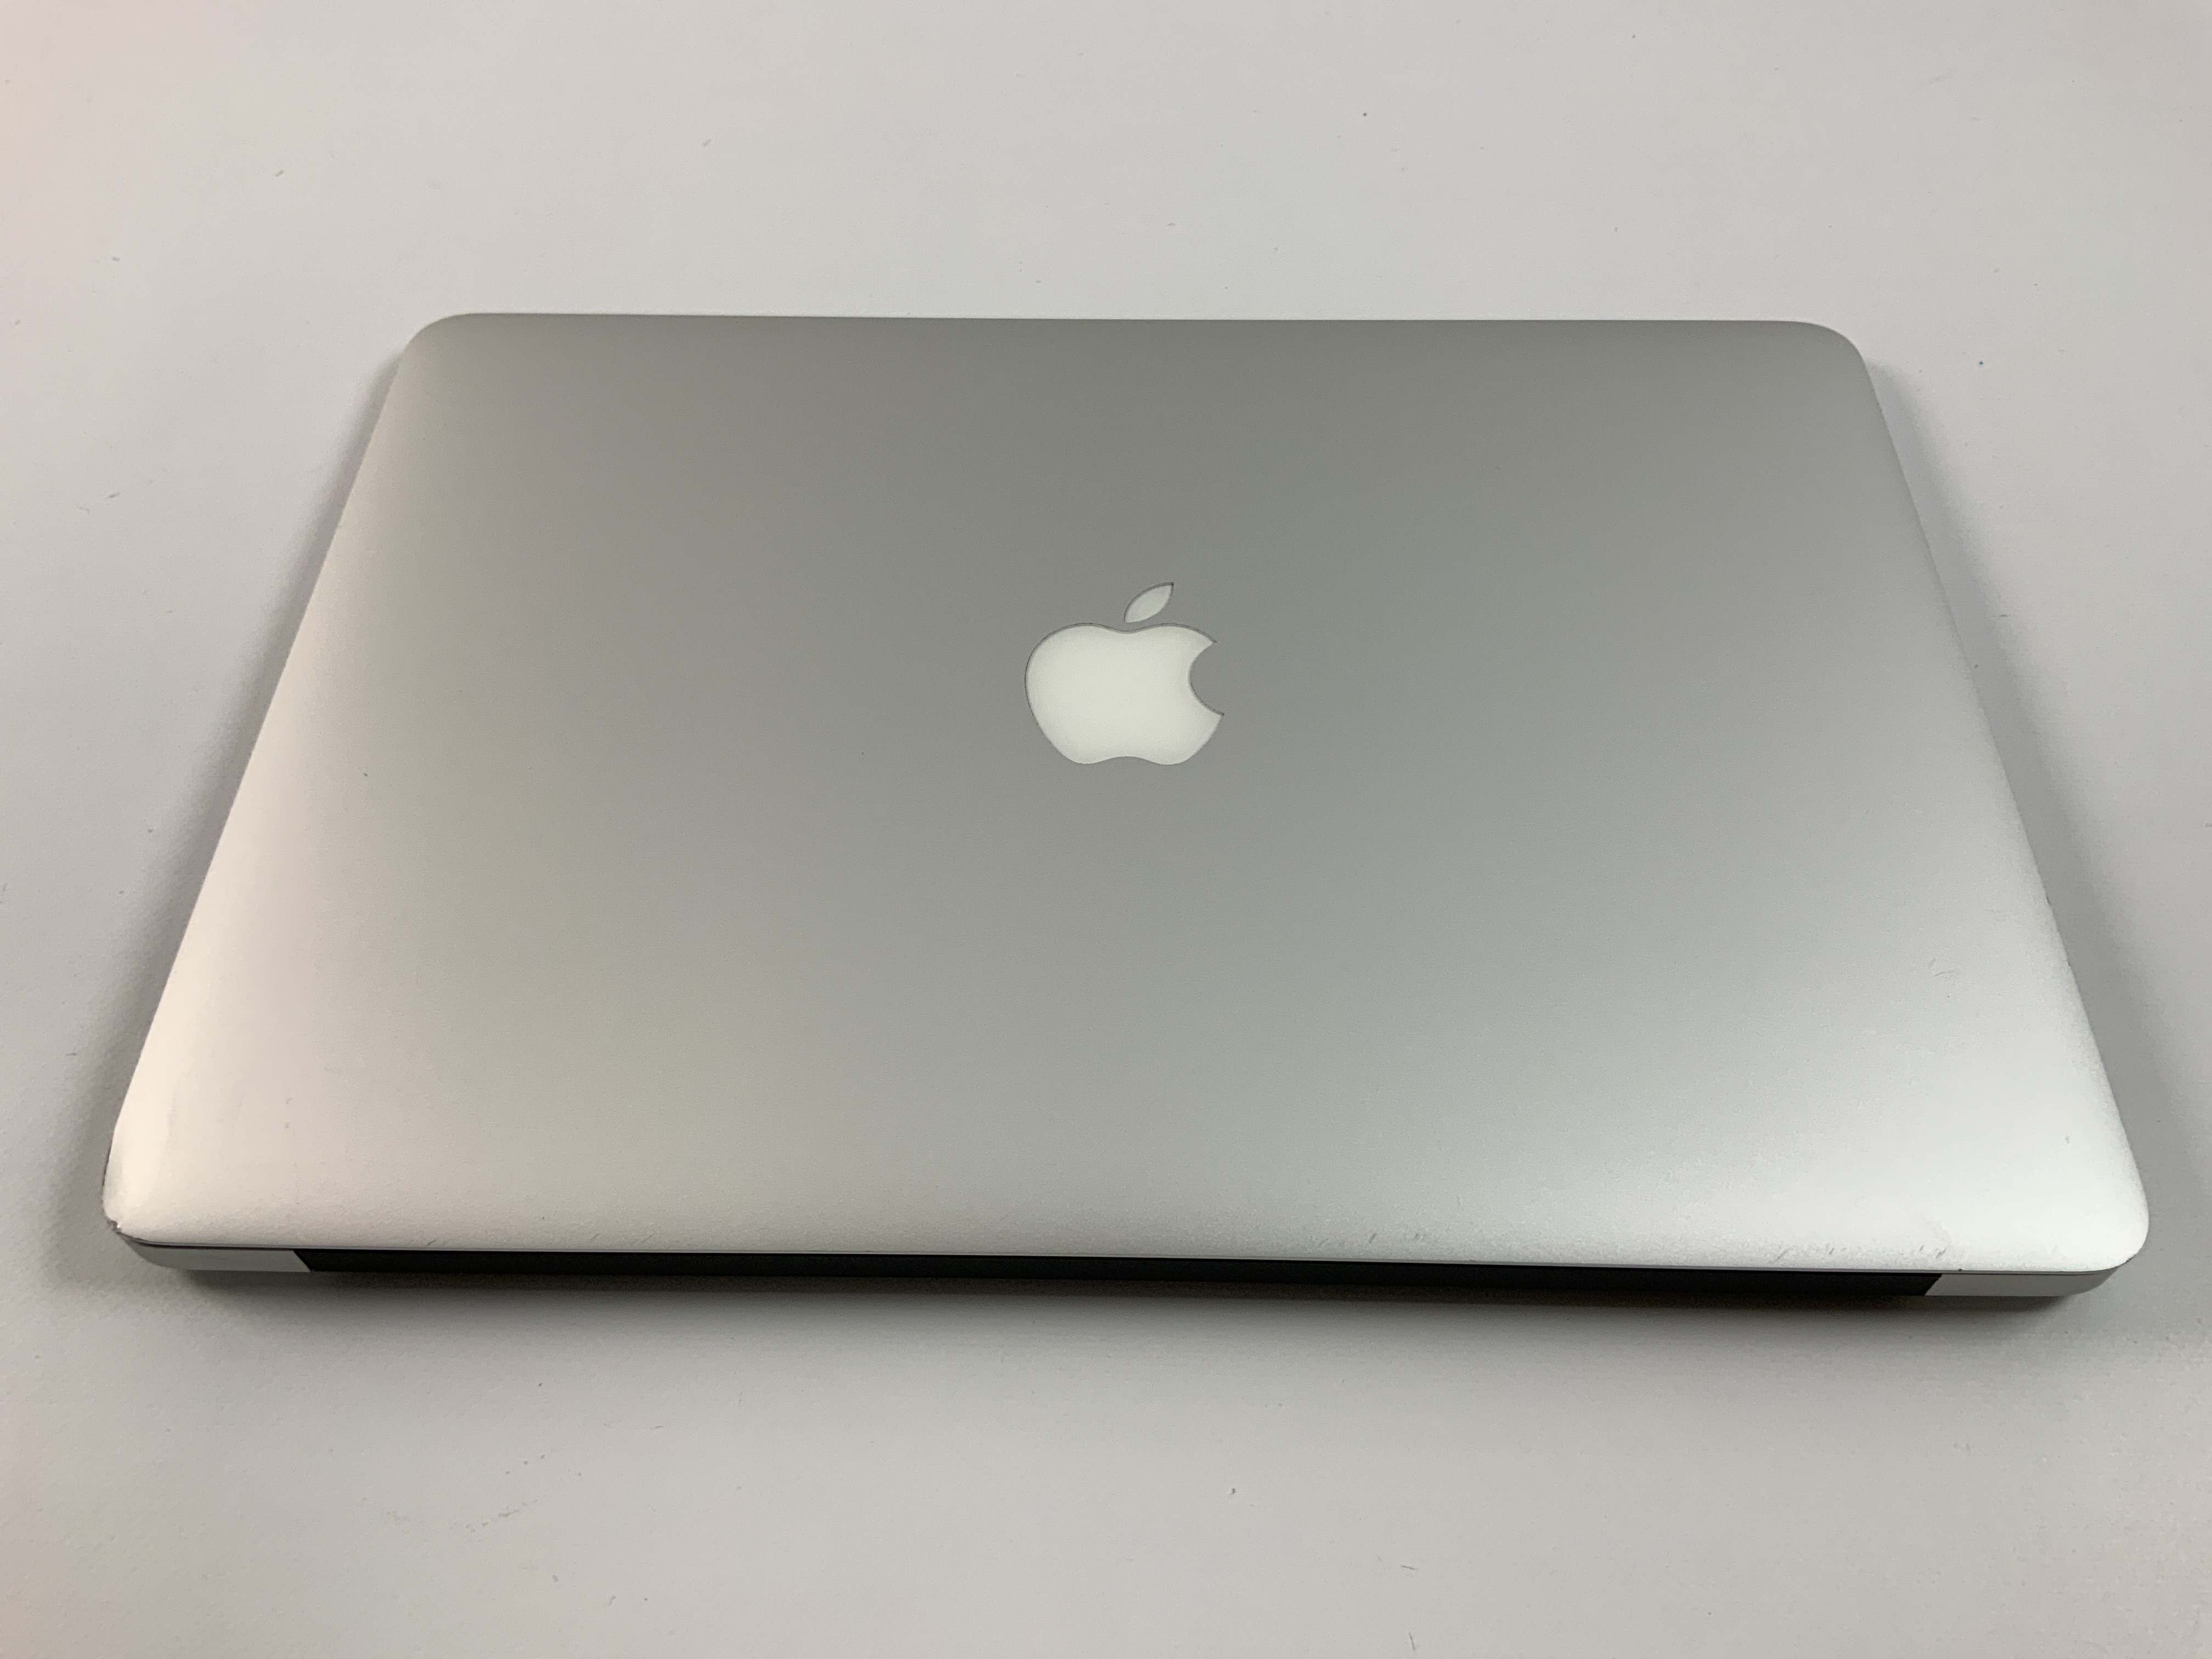 MacBook Air 13" Mid 2017 (Intel Core i5 1.8 GHz 8 GB RAM 256 GB SSD), Intel Core i5 1.8 GHz, 8 GB RAM, 256 GB SSD, Bild 2